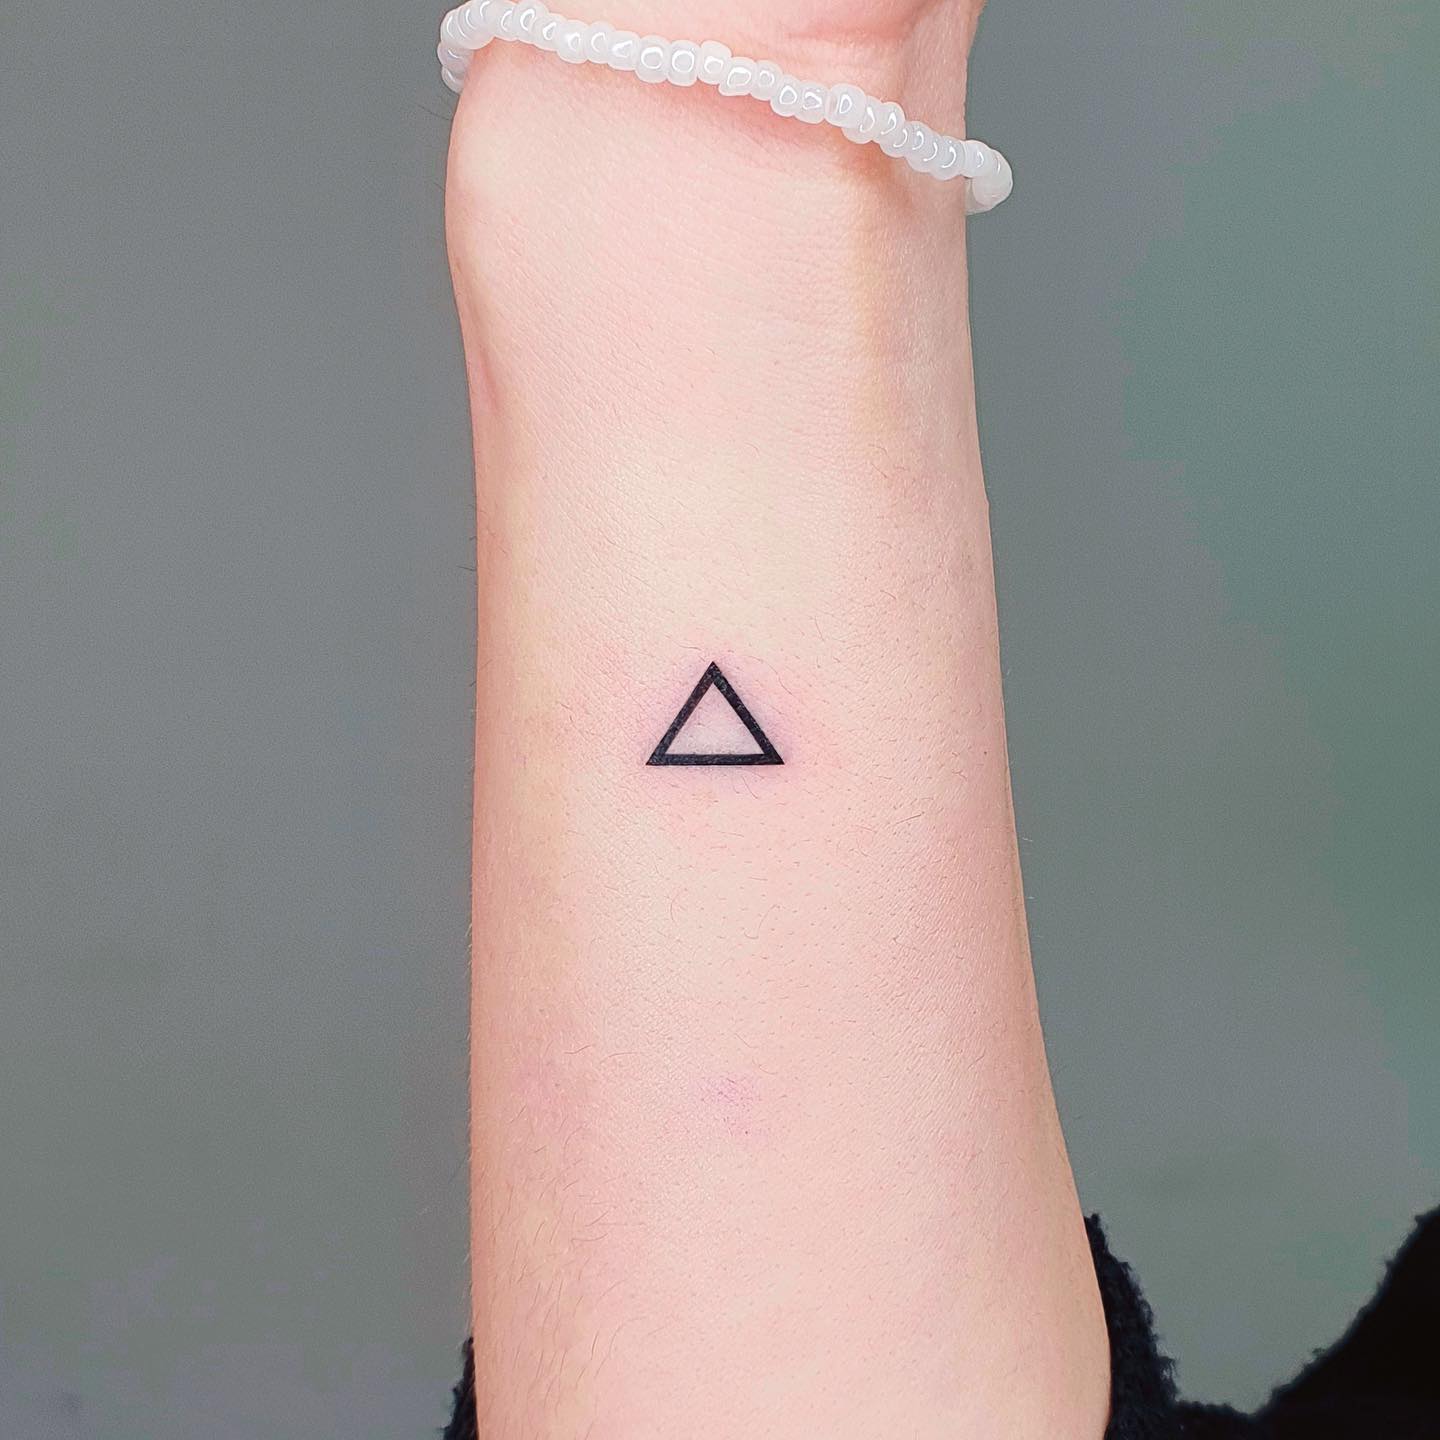 small triangle tattoo ideas by martinatattooer